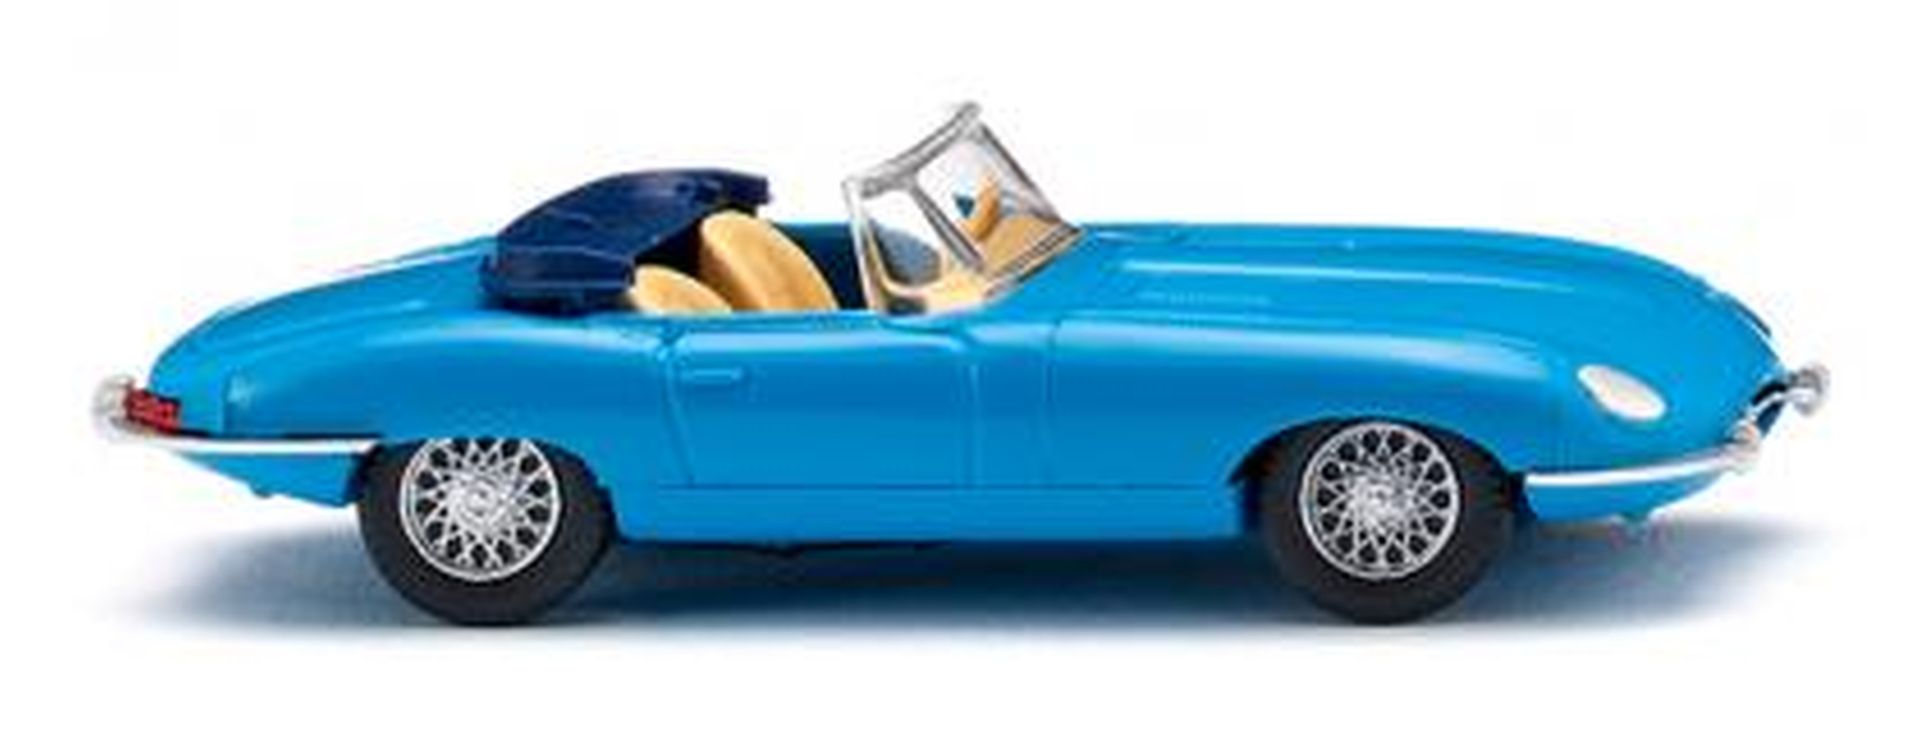 Wiking 081707 - Jaguar E-Type Roadster - blau